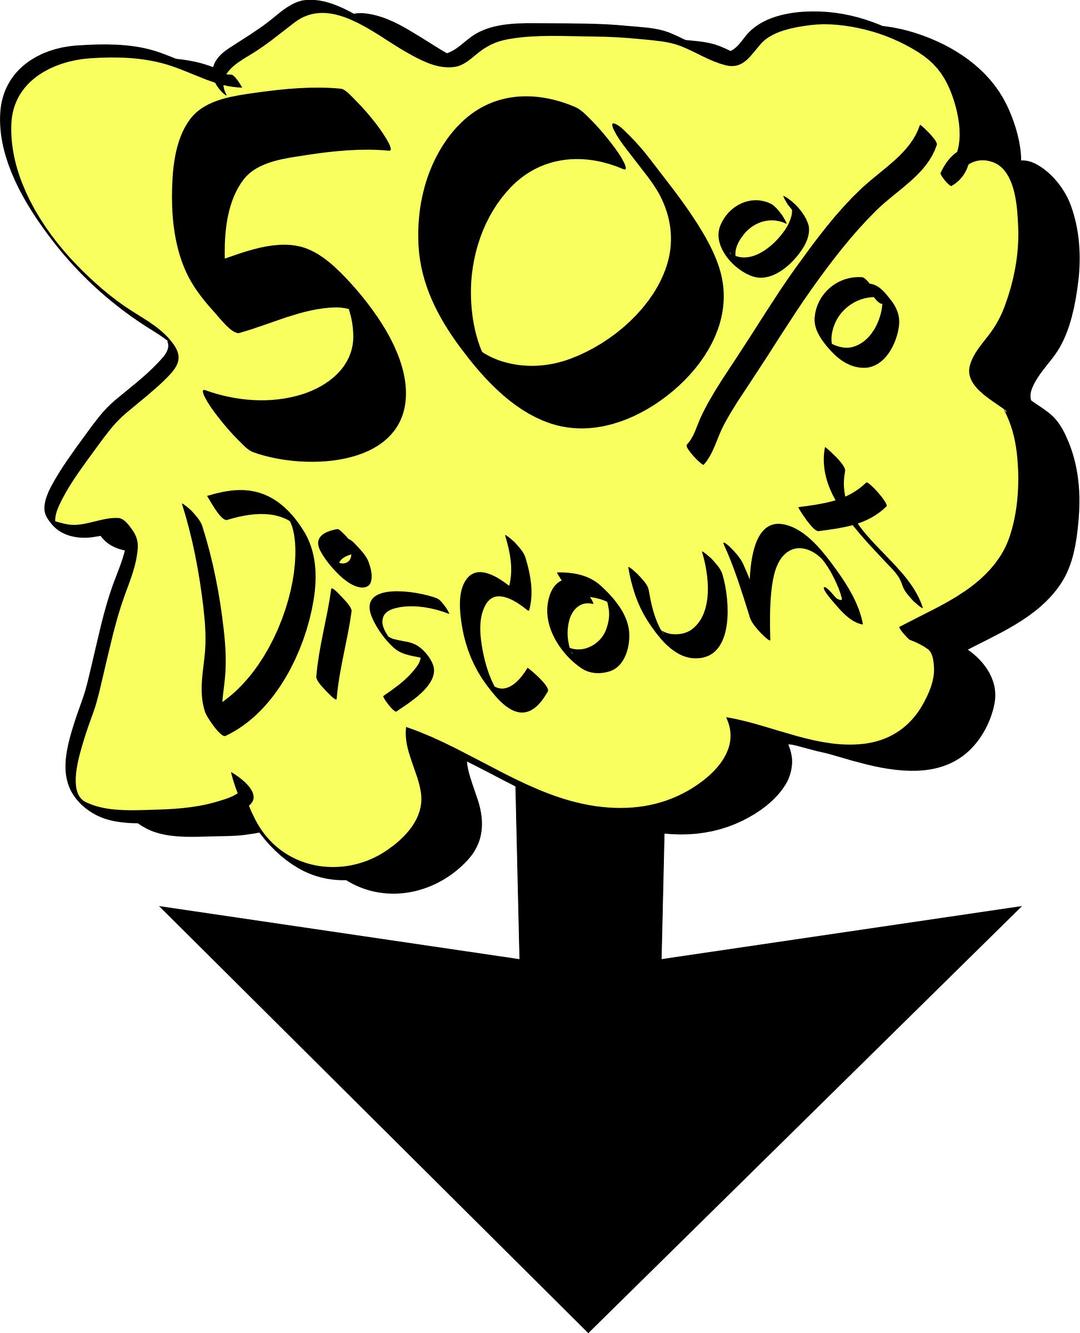 50% Discount png transparent